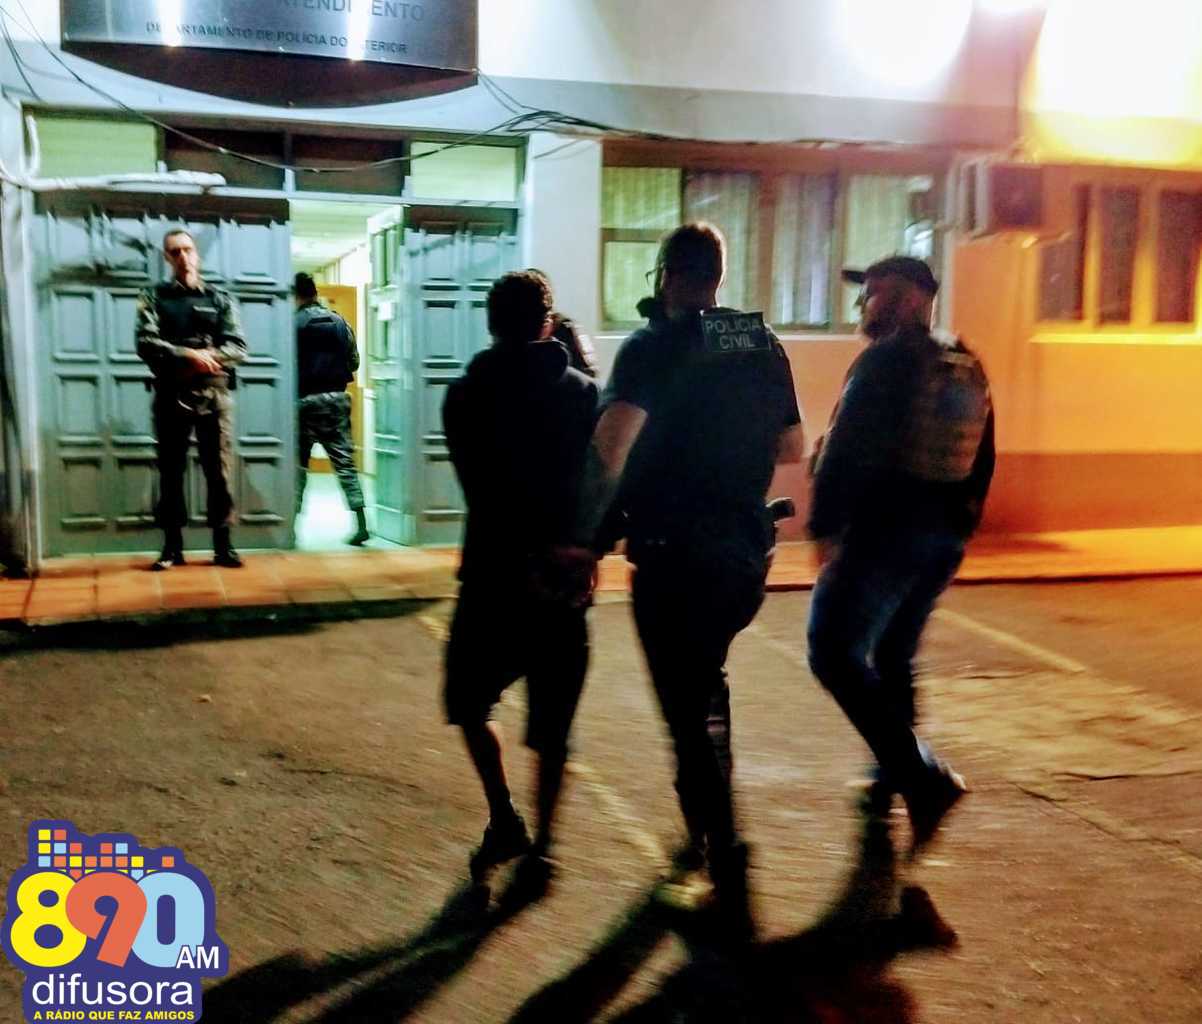 Operação da Polícia Civil apreende drogas, revólver, faca e prende três em Bento